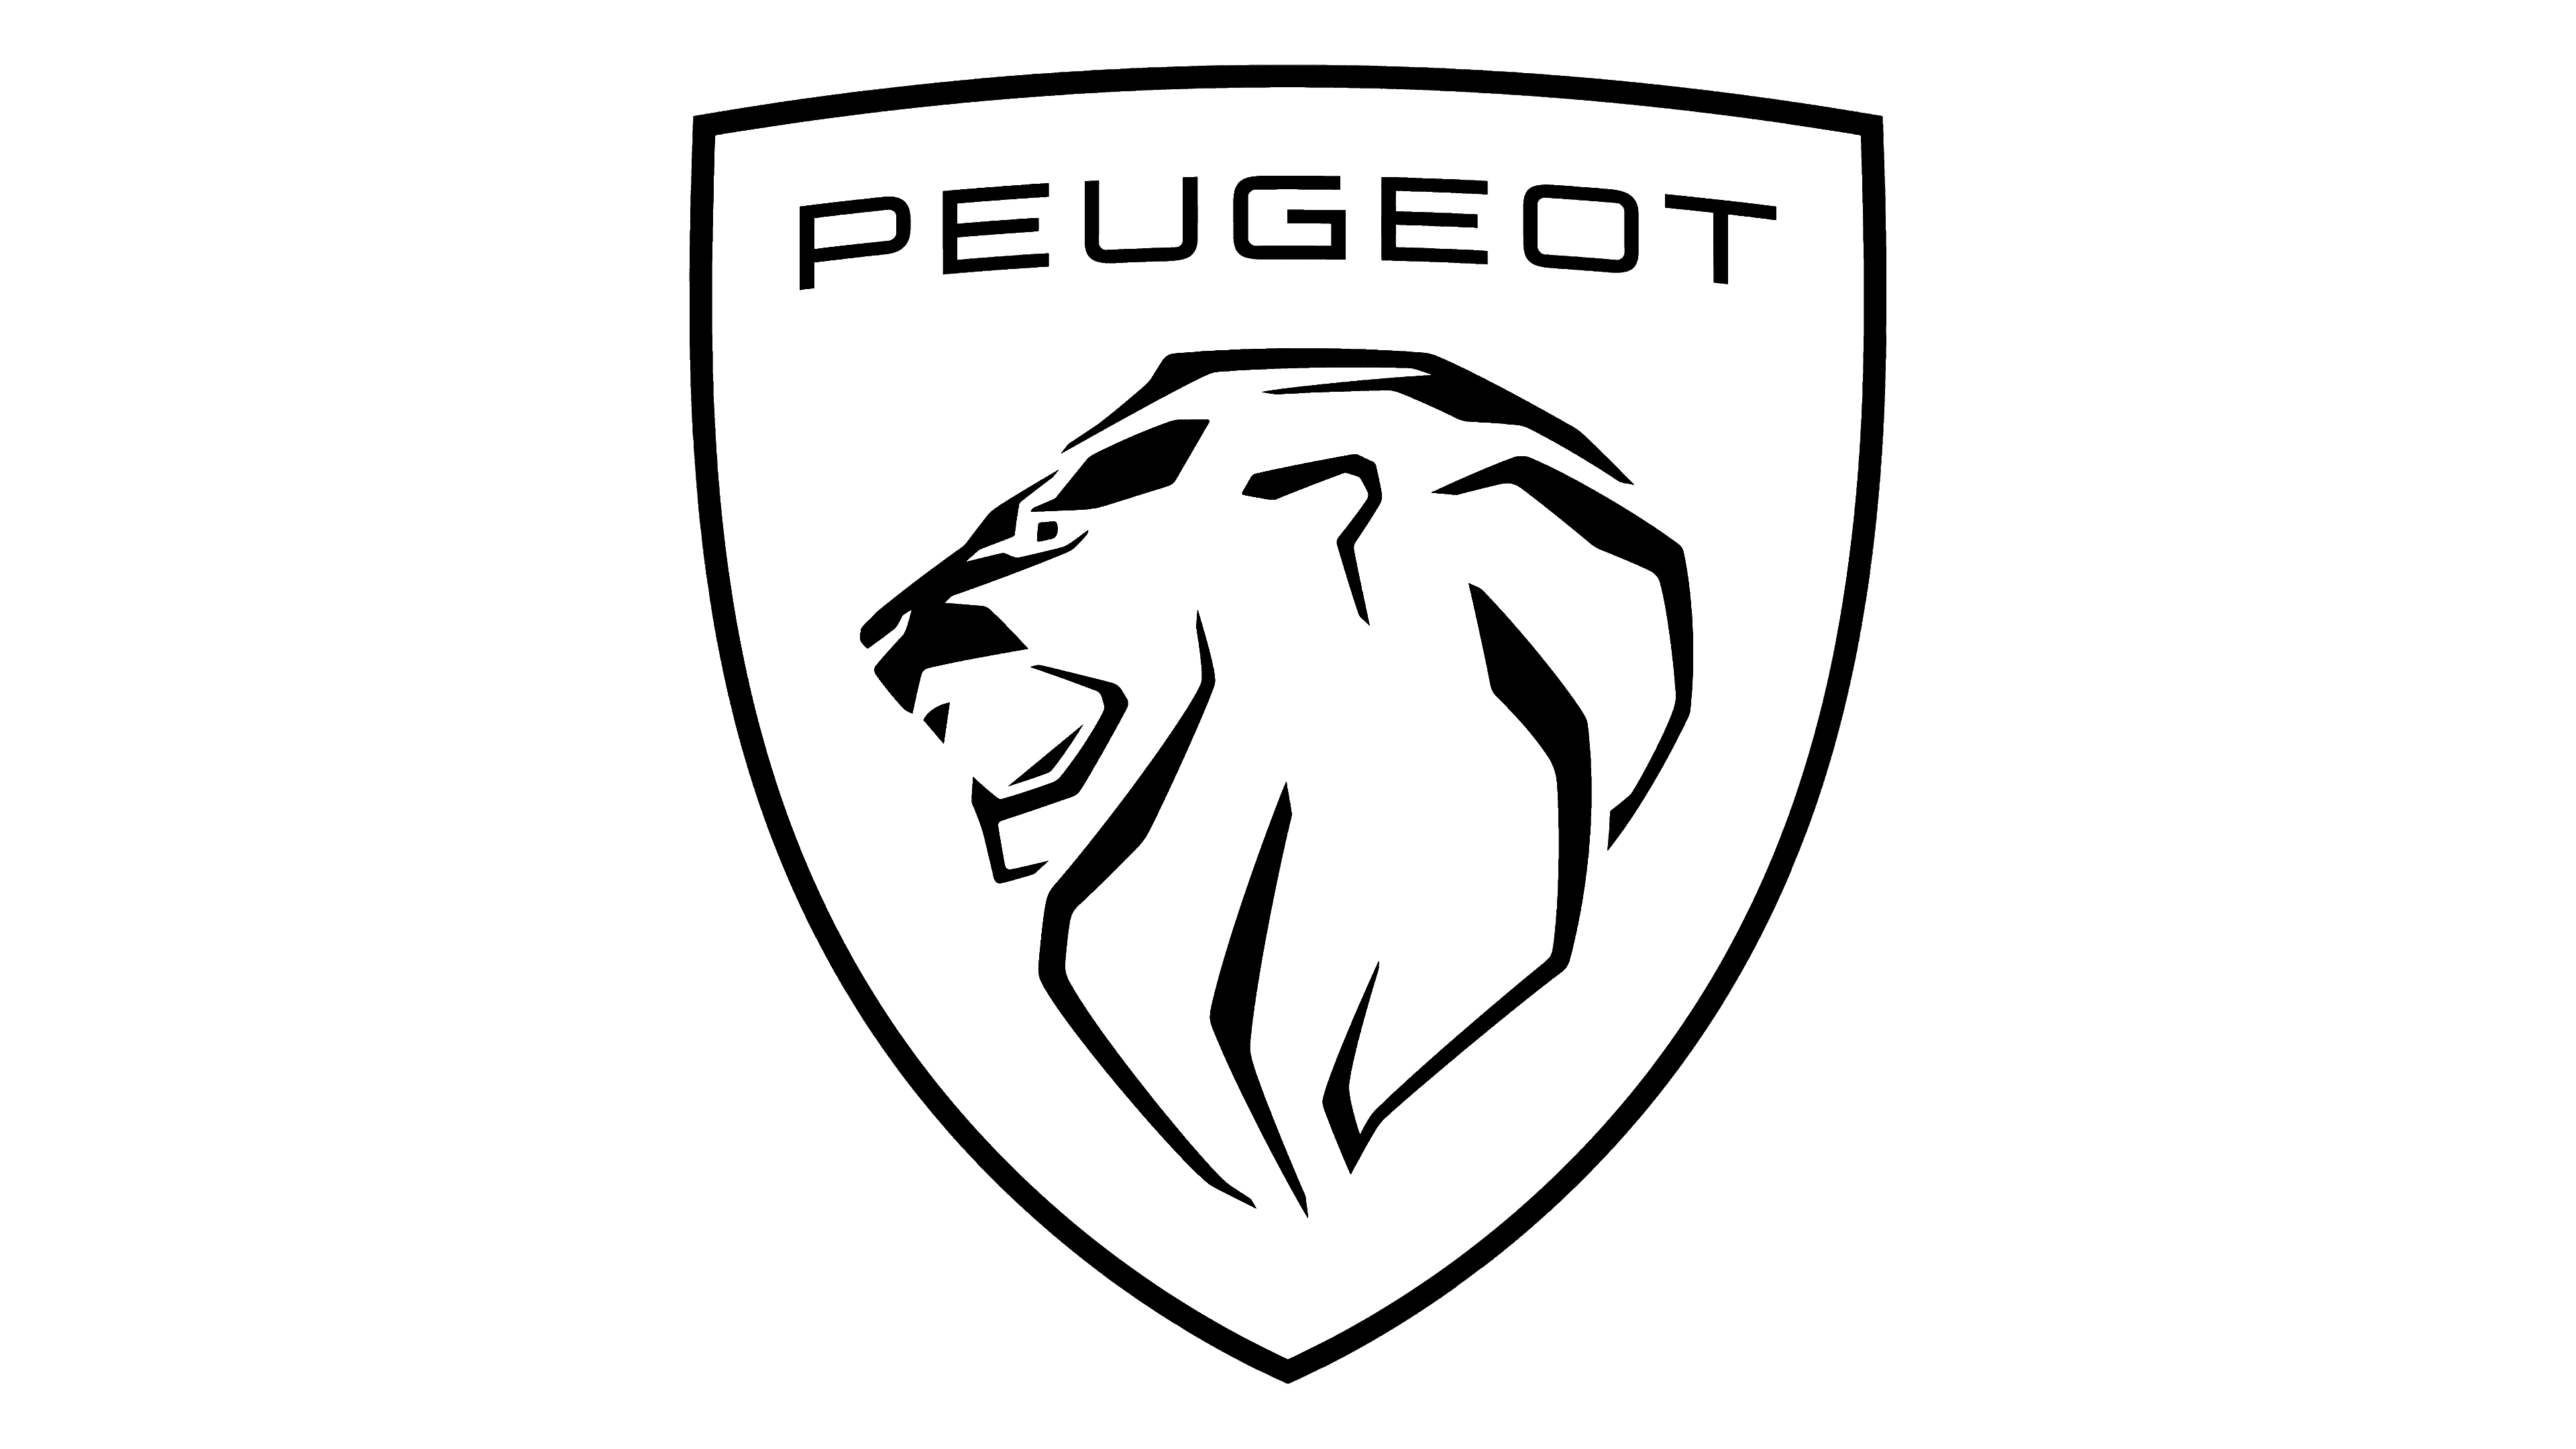 Peugeot Font is → Castle